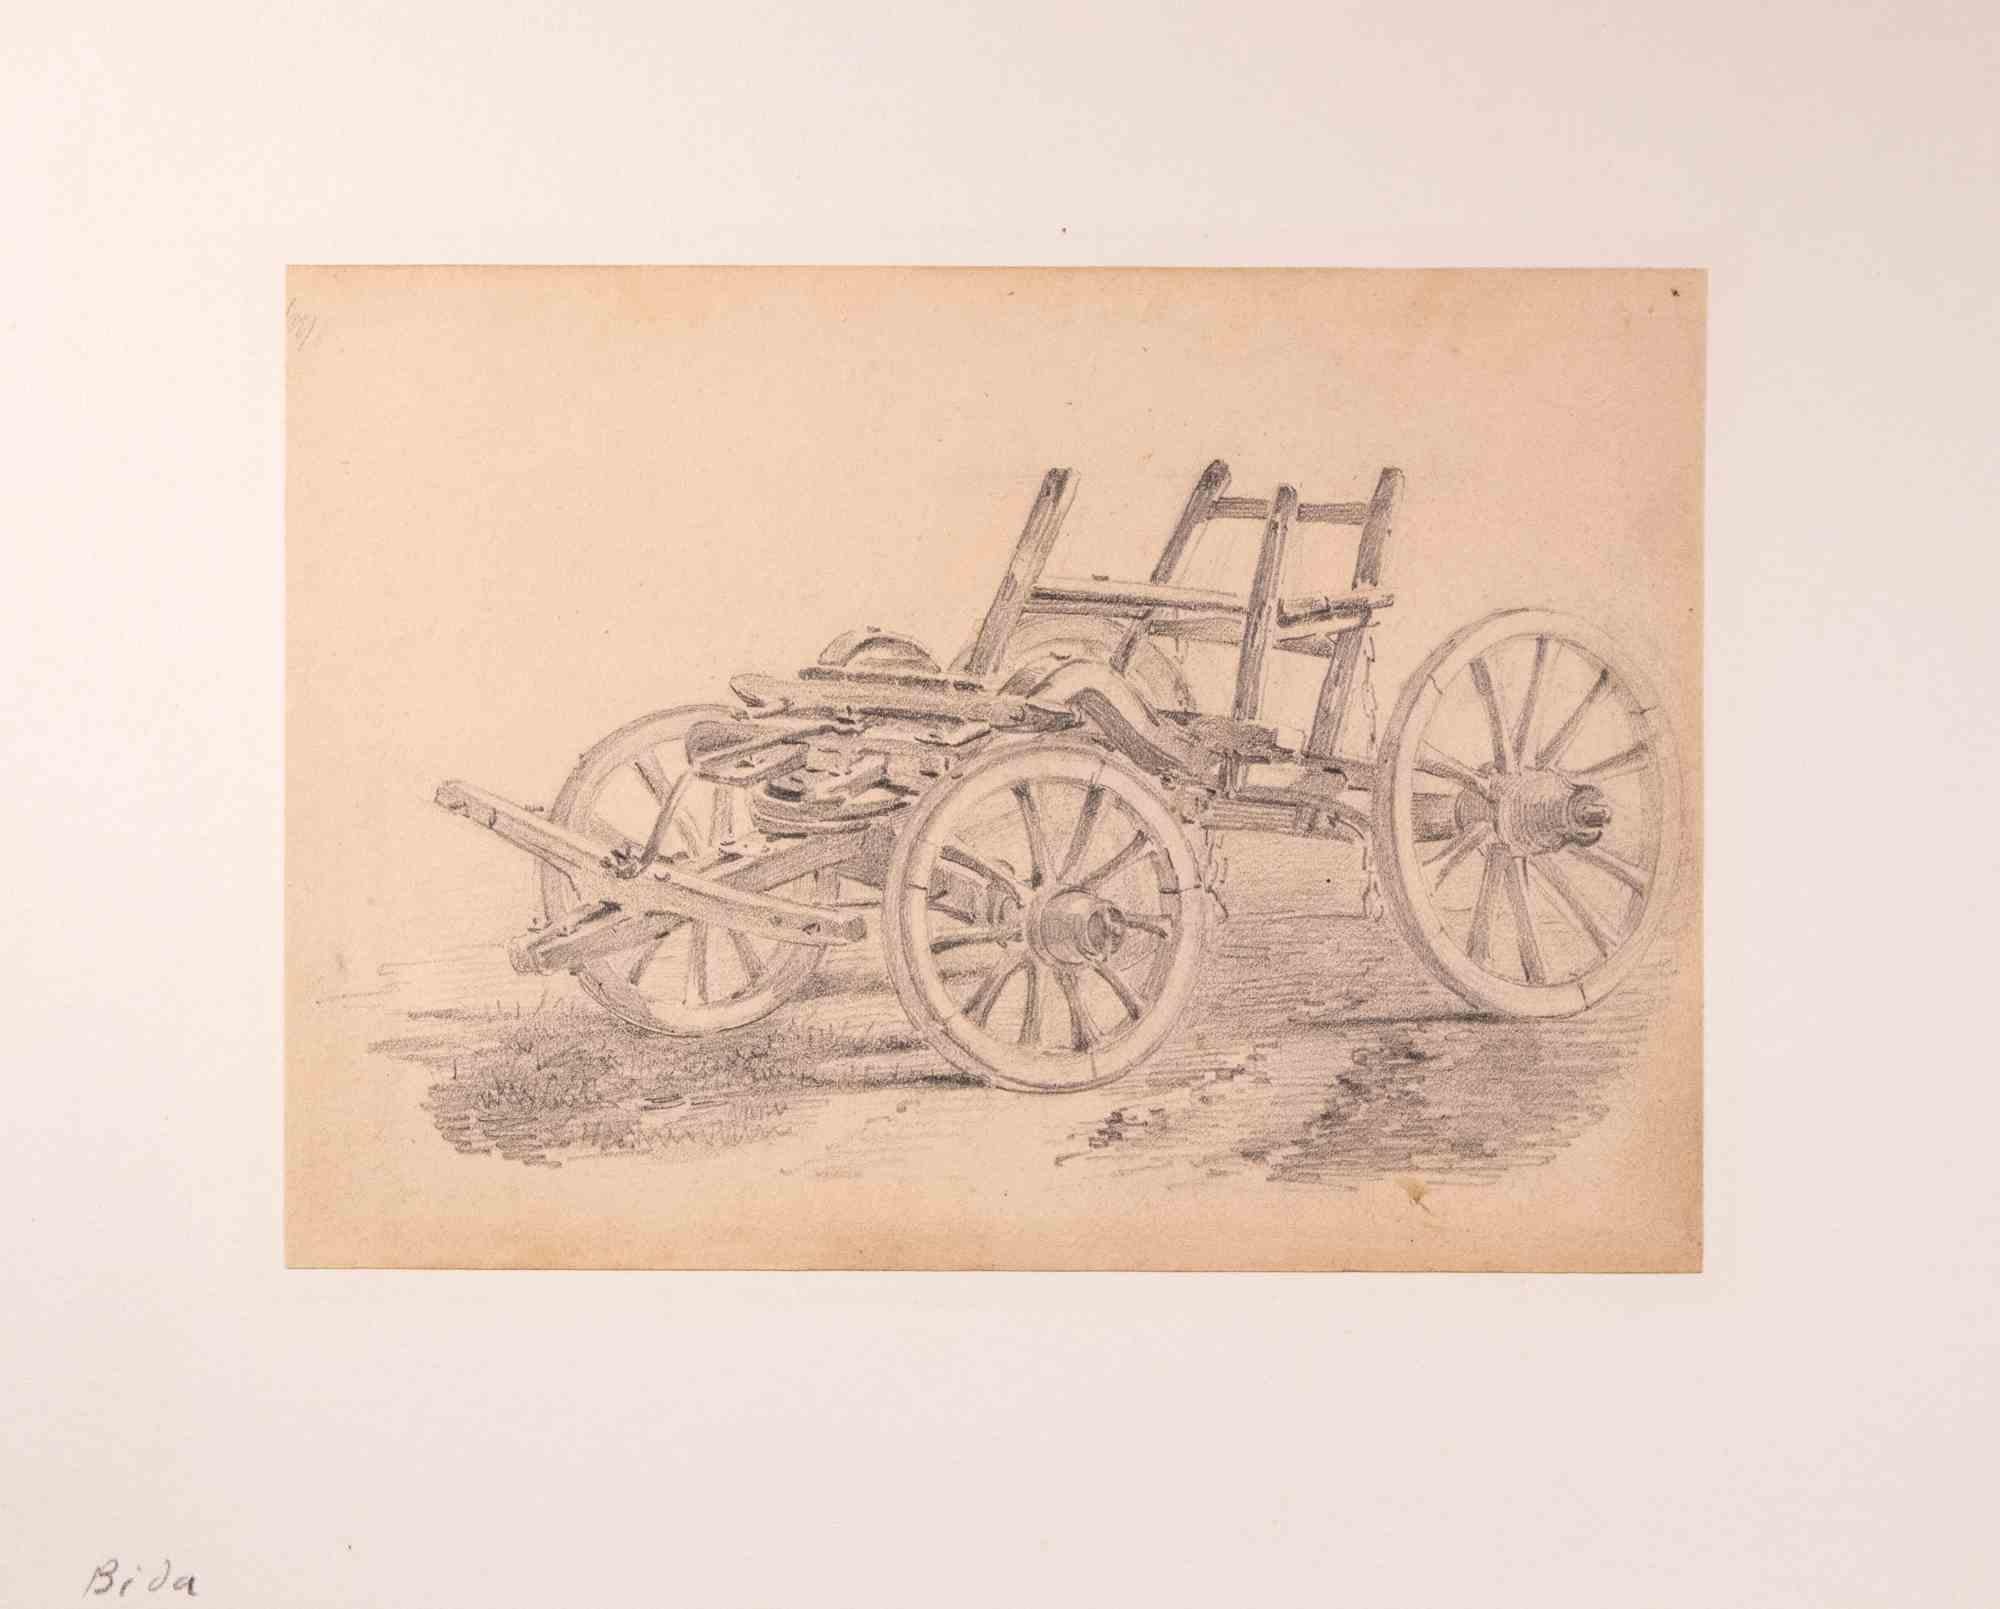 Carriage est un dessin original au crayon réalisé par Alexandre Bida (1823-1895).

Bonnes conditions.

Pas de signature.

F. Alexandre Bida (1813-1895) est un peintre français. Né à Toulouse, il se spécialise dans l'orientalisme et étudie auprès